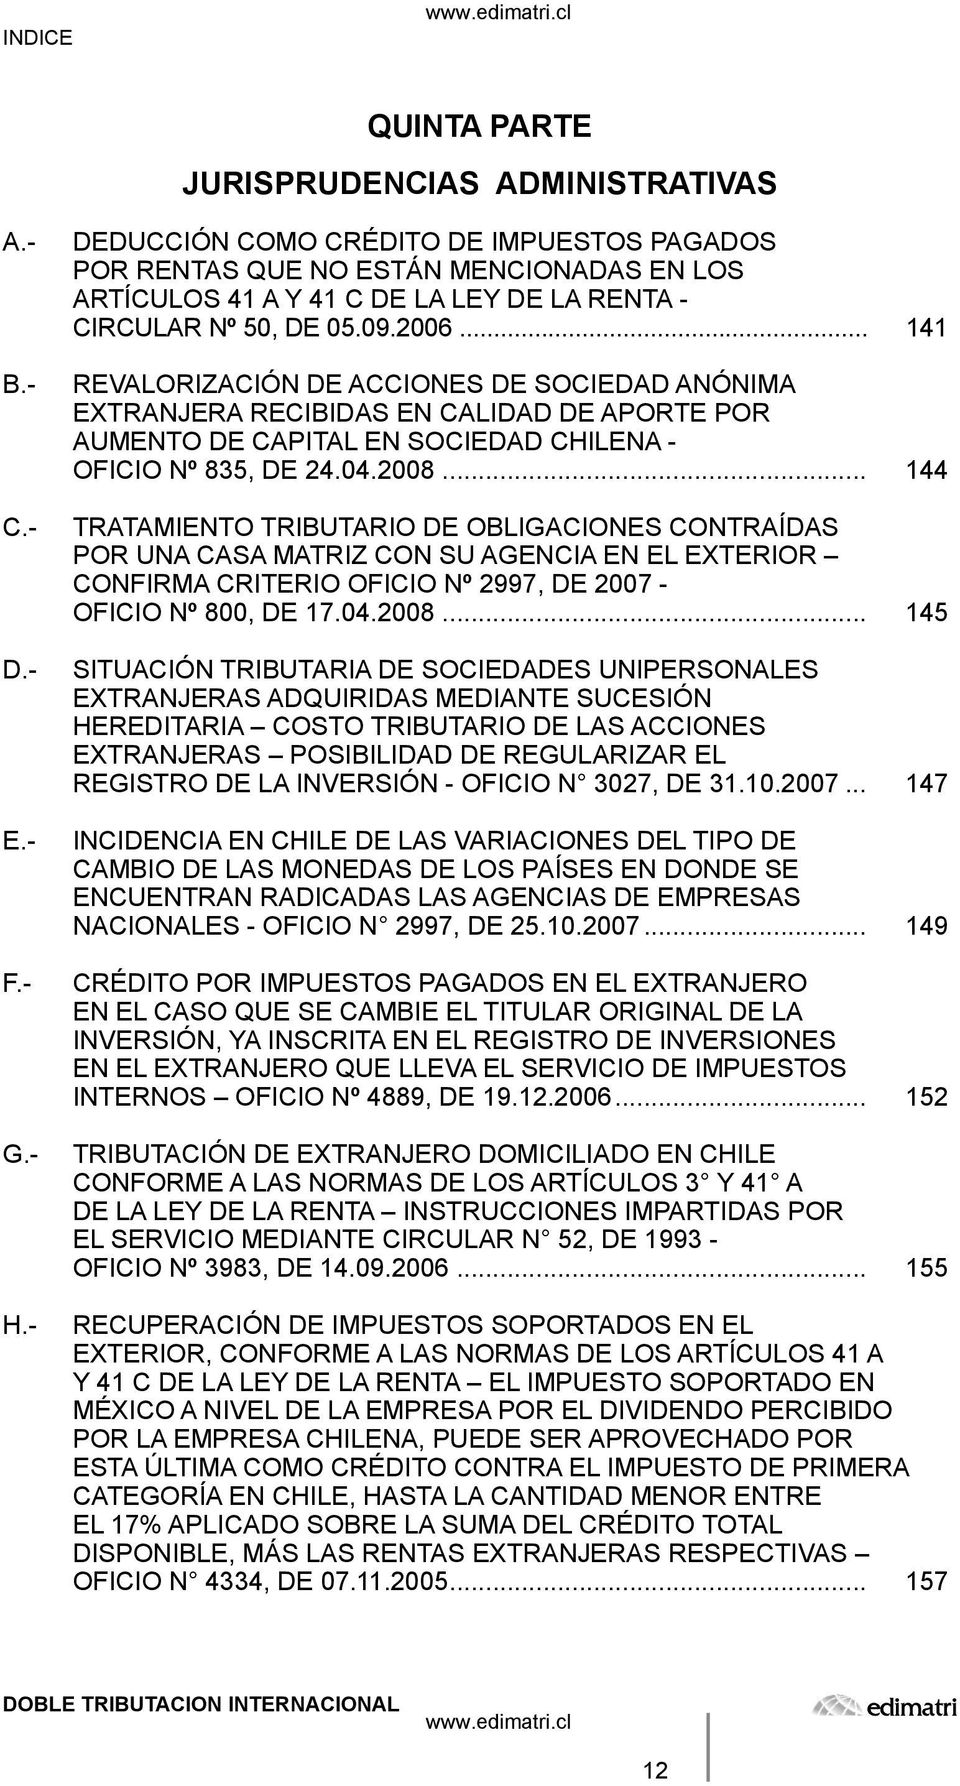 .. 141 REVALORIZACIÓN DE ACCIONES DE SOCIEDAD ANÓNIMA EXTRANJERA RECIBIDAS EN CALIDAD DE APORTE POR AUMENTO DE CAPITAL EN SOCIEDAD CHILENA - OFICIO Nº 835, DE 24.04.2008.